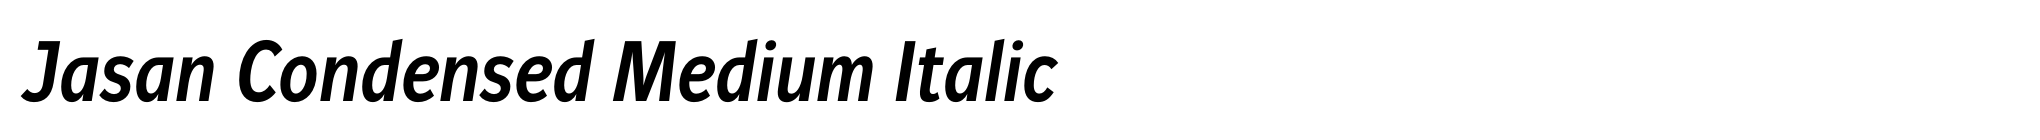 Jasan Condensed Medium Italic image